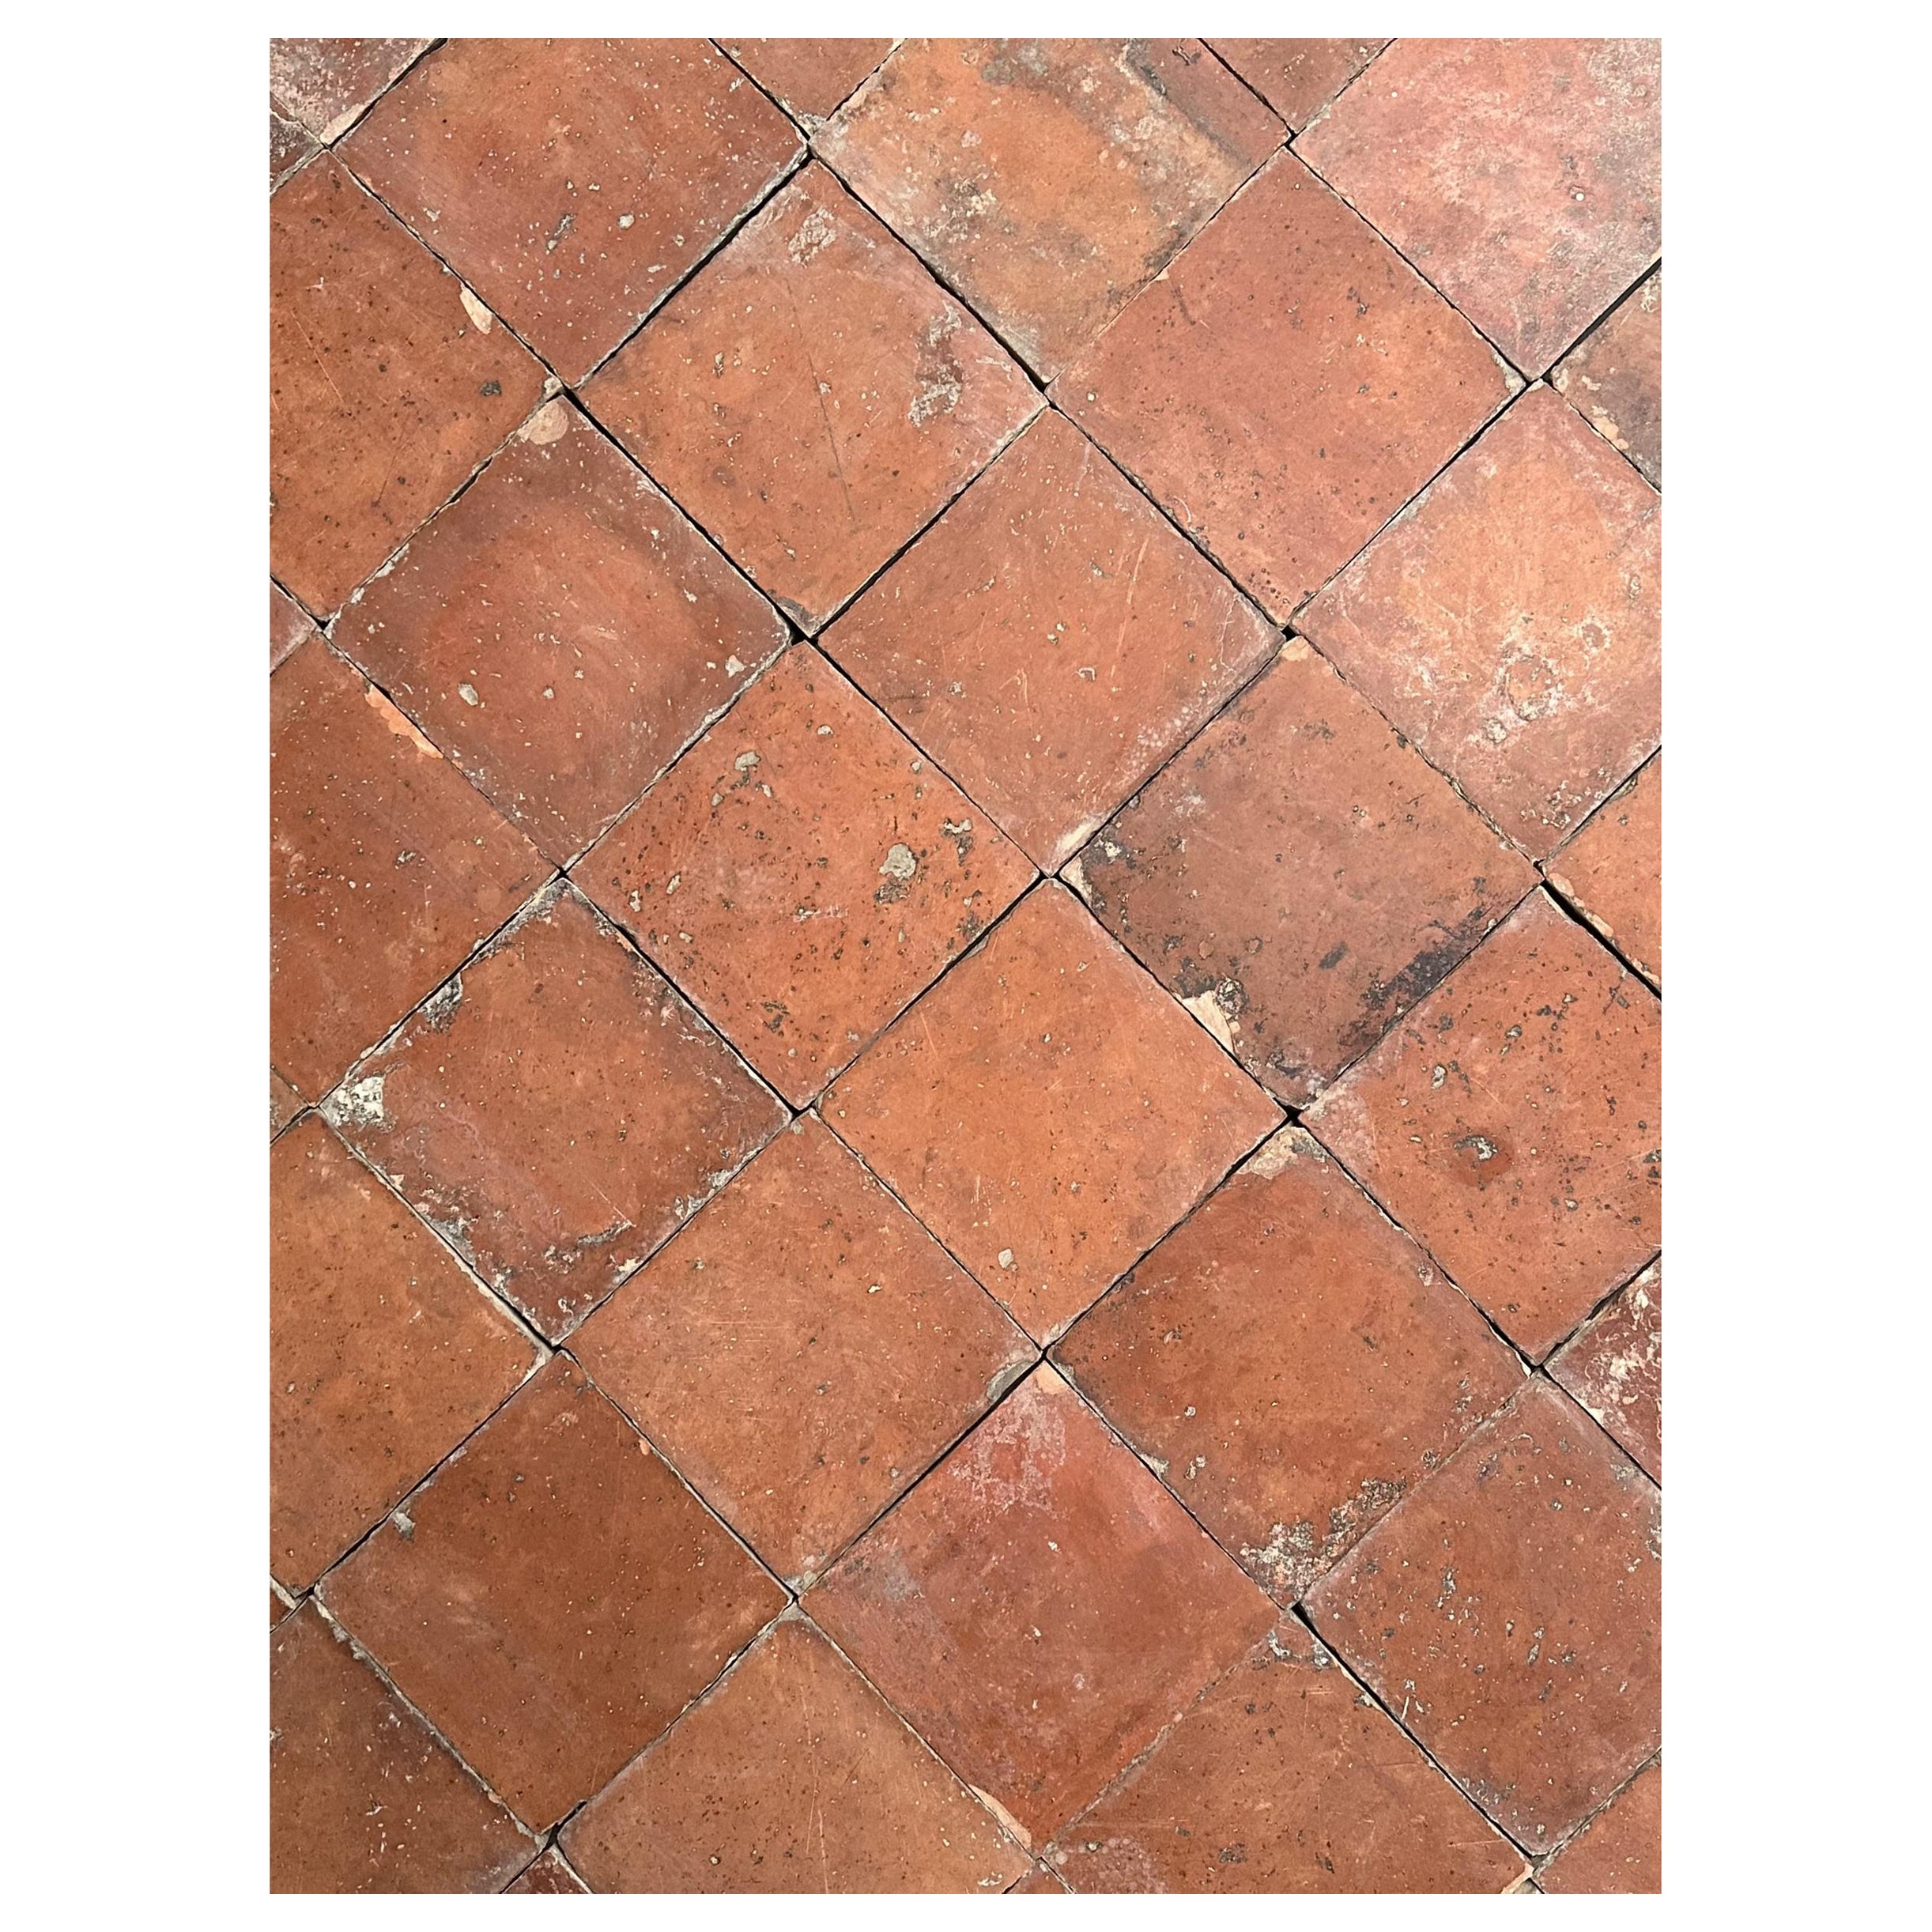 French Terracotta Floor Tiles For Sale